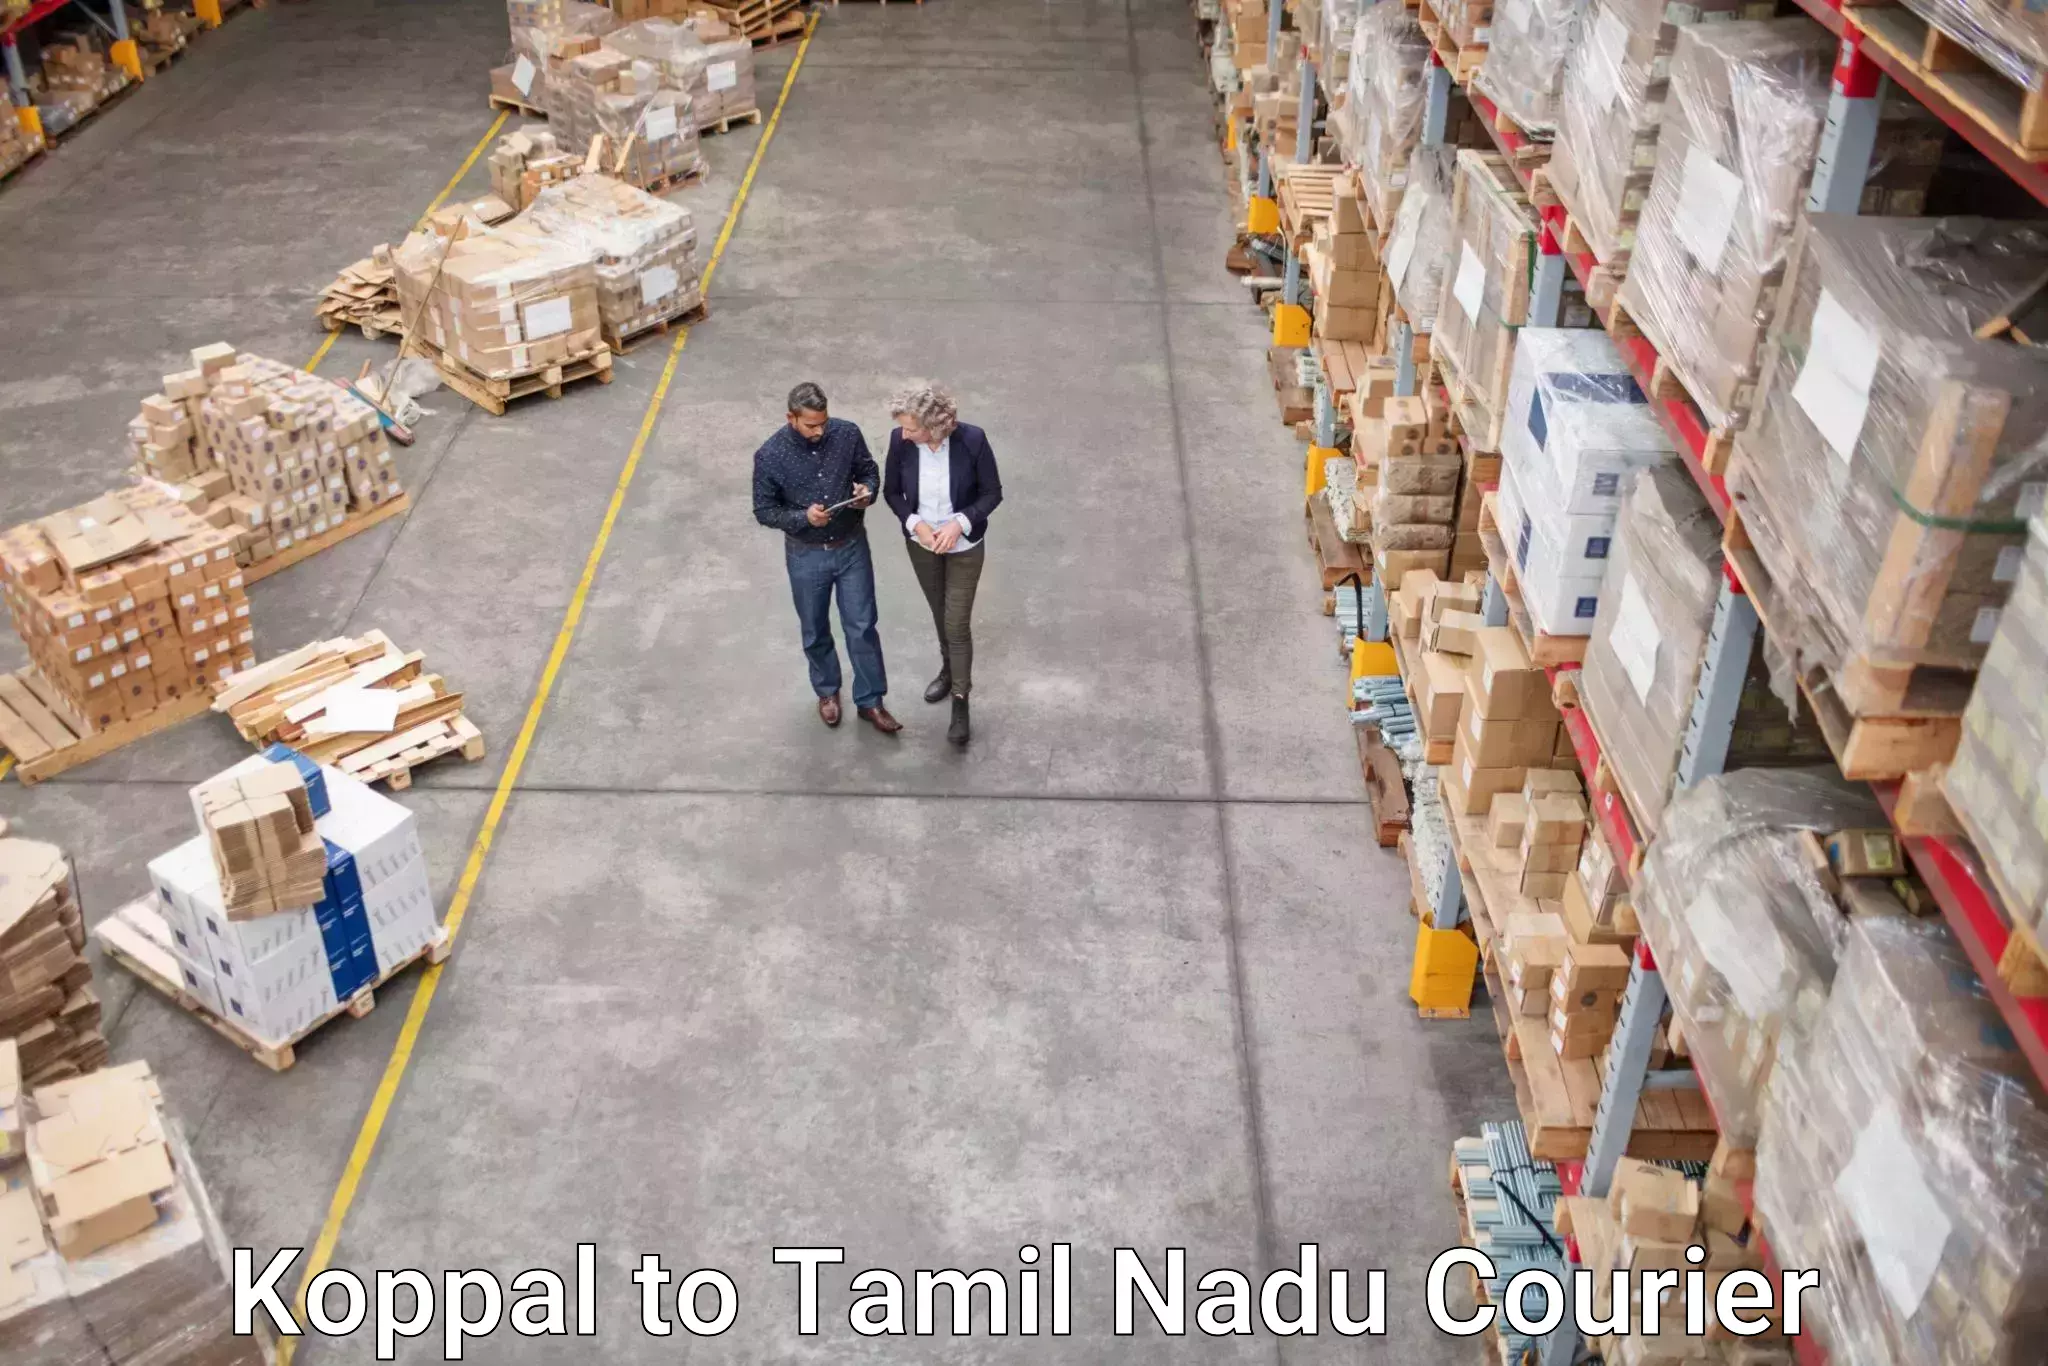 Global shipping networks Koppal to Tiruturaipundi